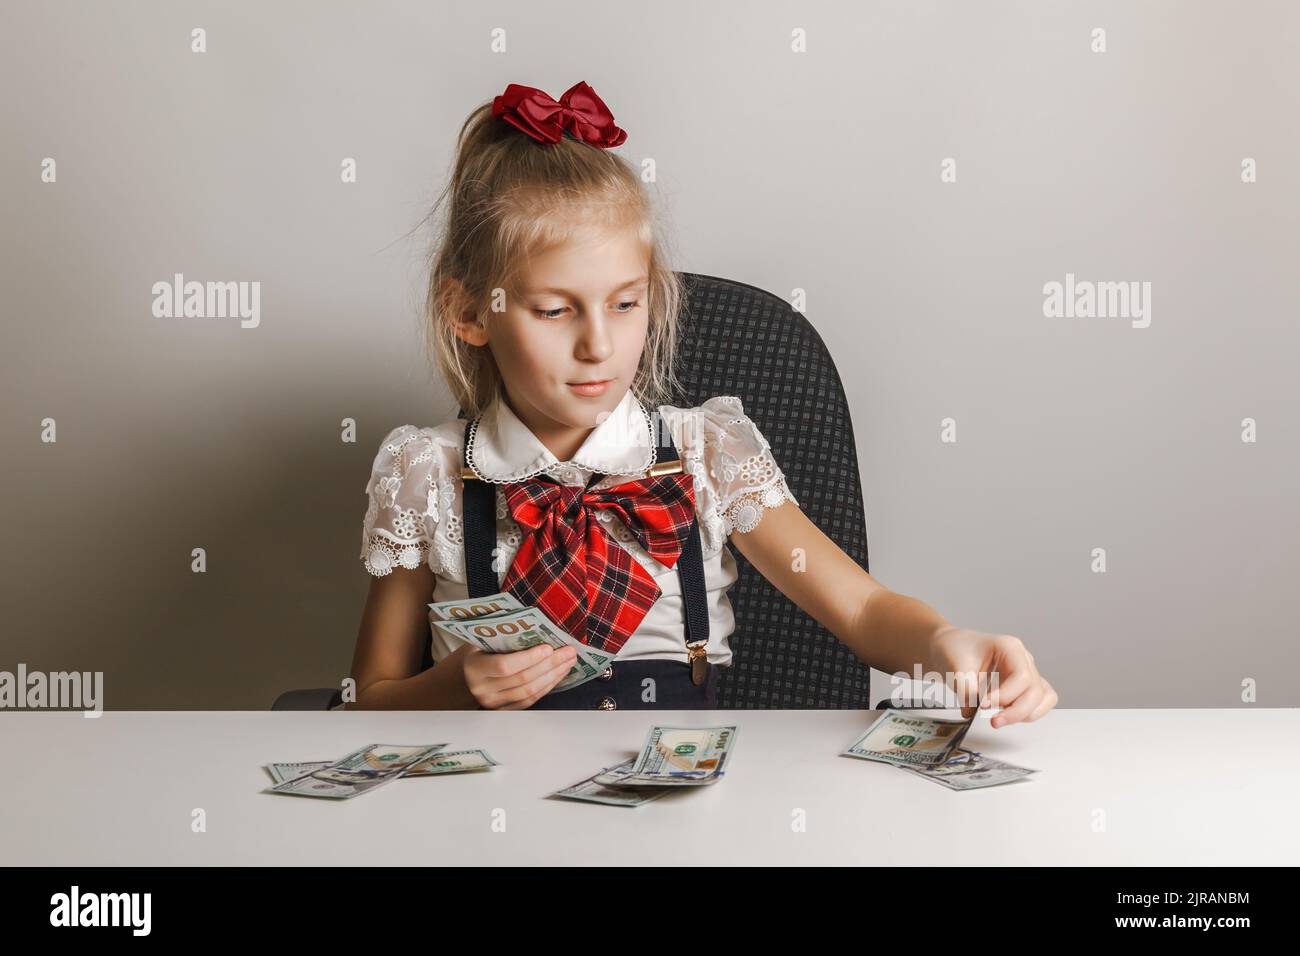 Une petite fille dans un uniforme d'école met l'argent dans des piles différentes. Enseigner aux enfants la littératie financière. Banque D'Images